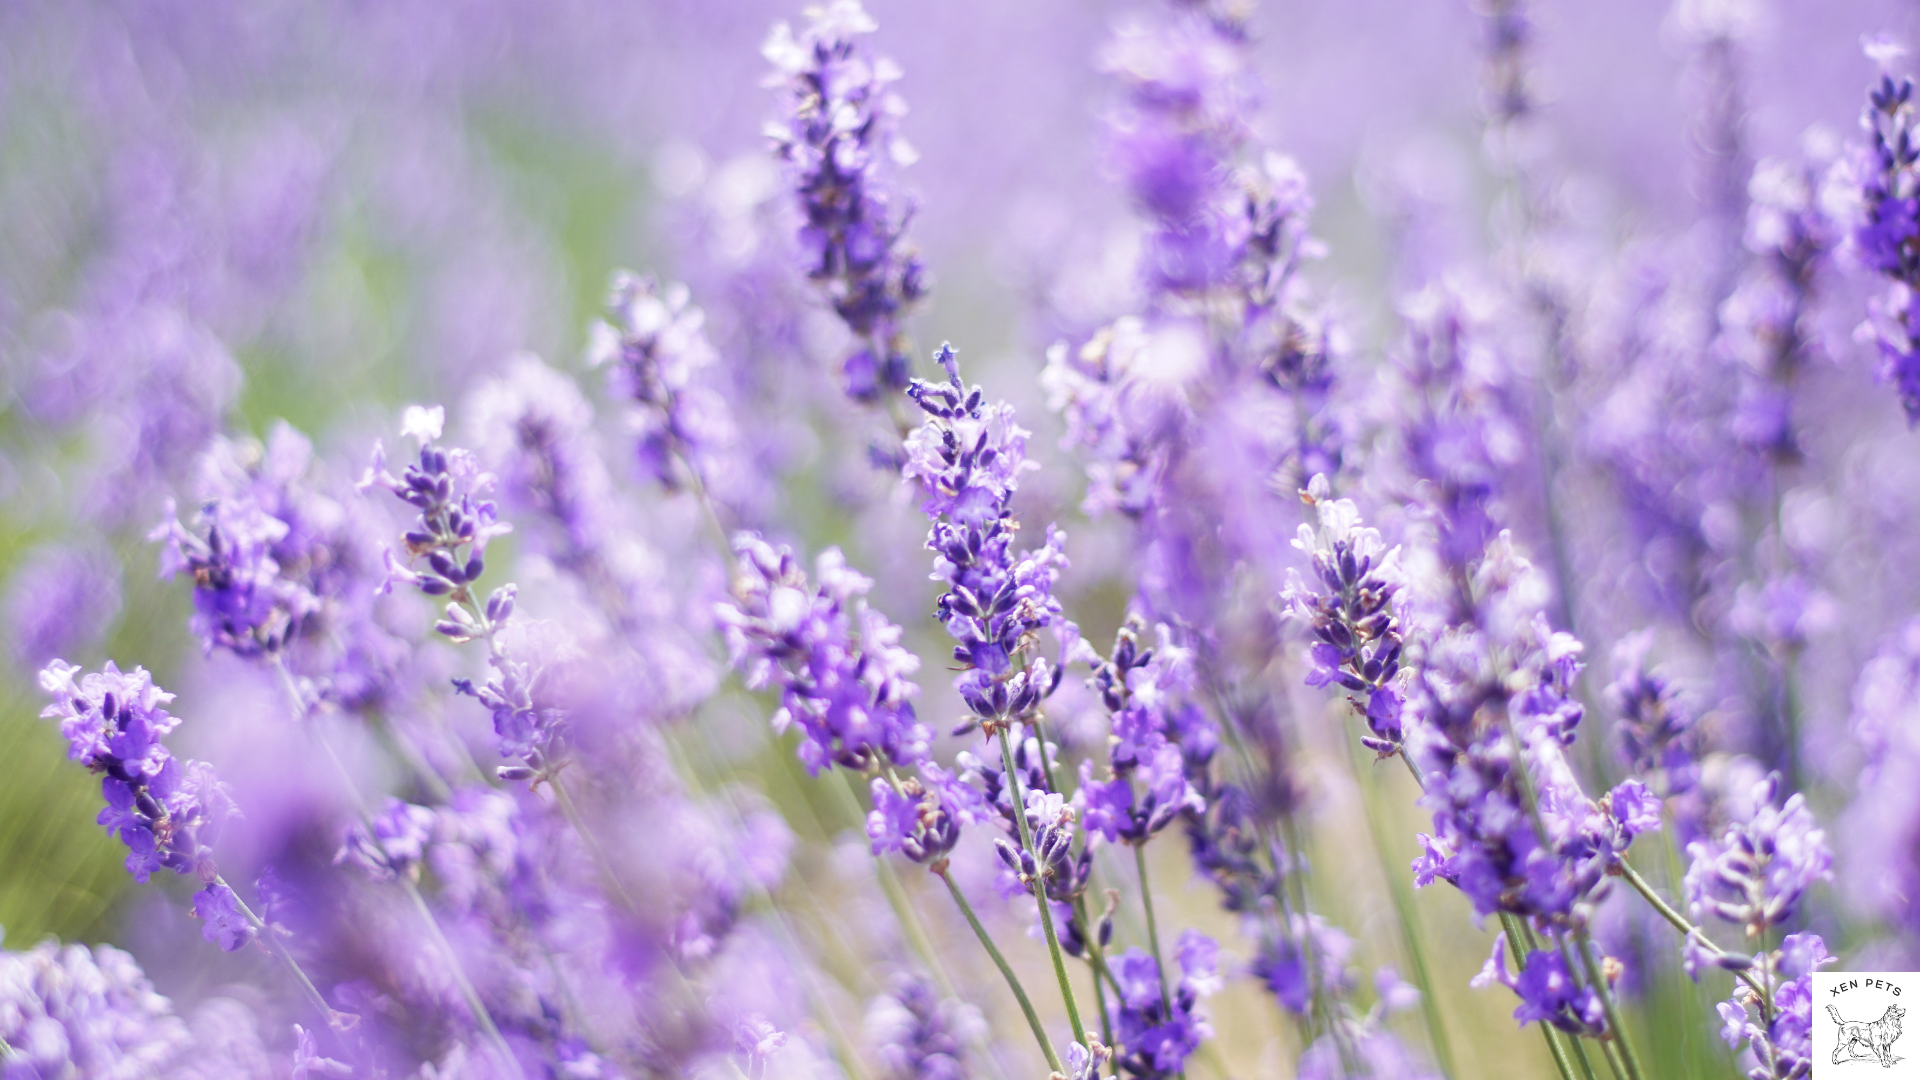 lavender plants in a field